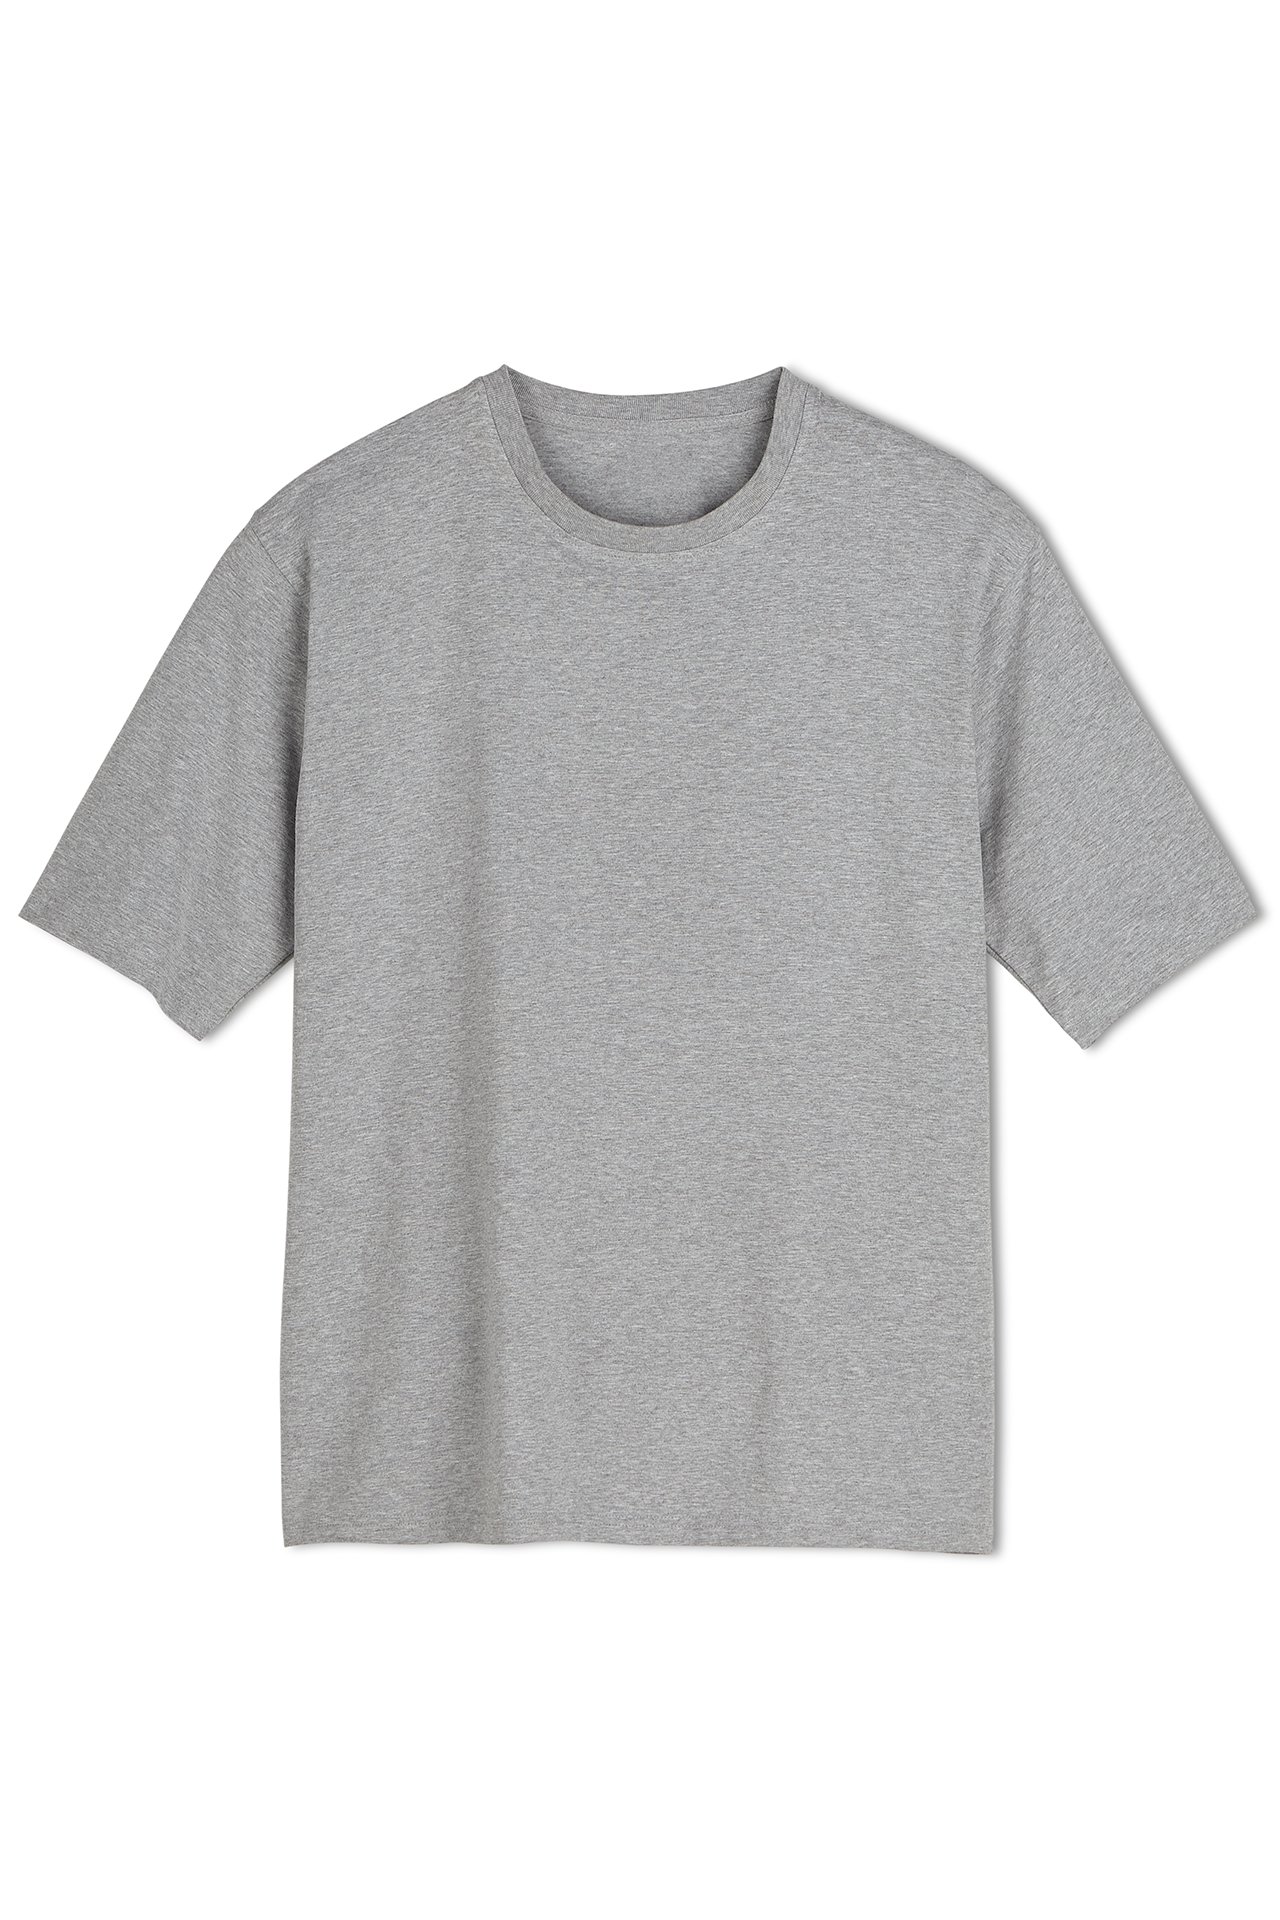 Coolibar - Short sleeve UV sport tee - grey